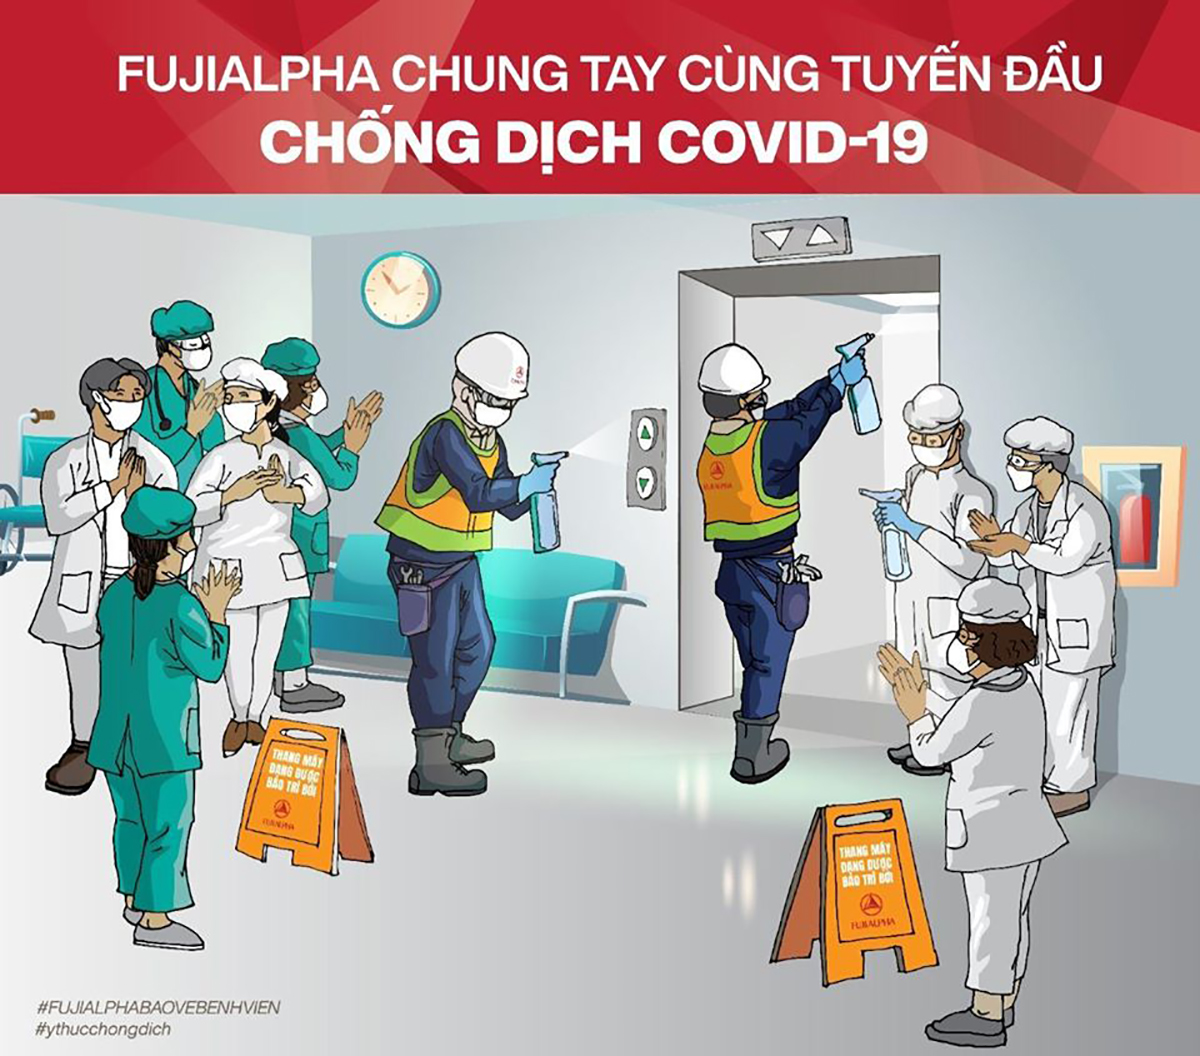 FUJIALPHA triển khai chiến dịch “Chung tay cùng tuyến đầu chống dịch Covid-19”, cung cấp dịch vụ bảo trì sát khuẩn miễn phí cho toàn bộ các bệnh viện trên toàn quốc - Ảnh: Phú Thành